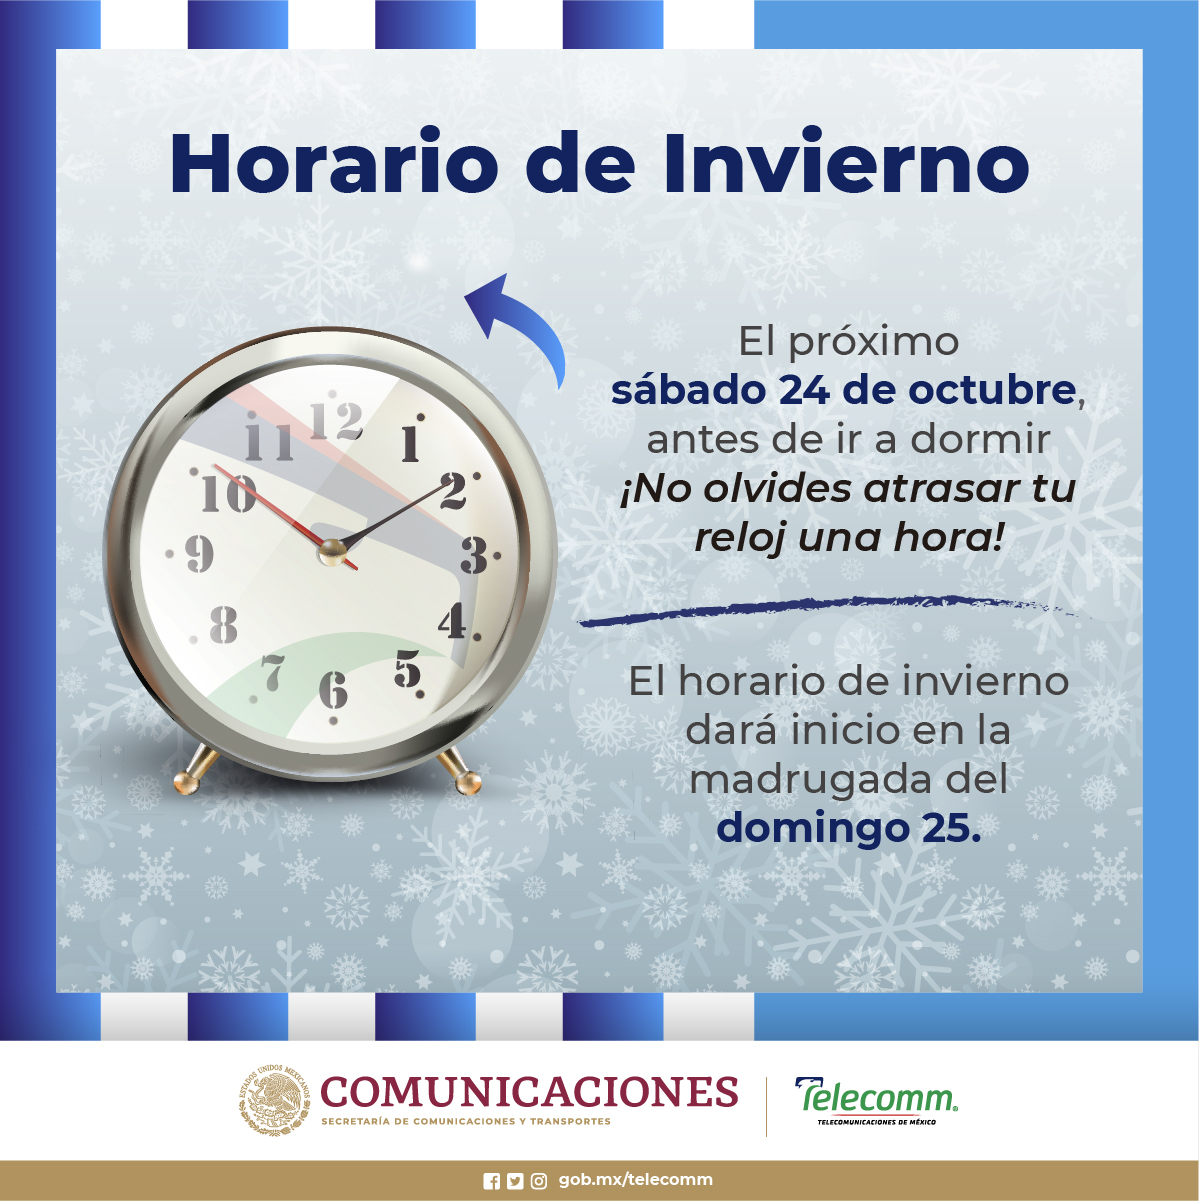 horario-de-invierno-telecomunicaciones-de-m-xico-gobierno-gob-mx